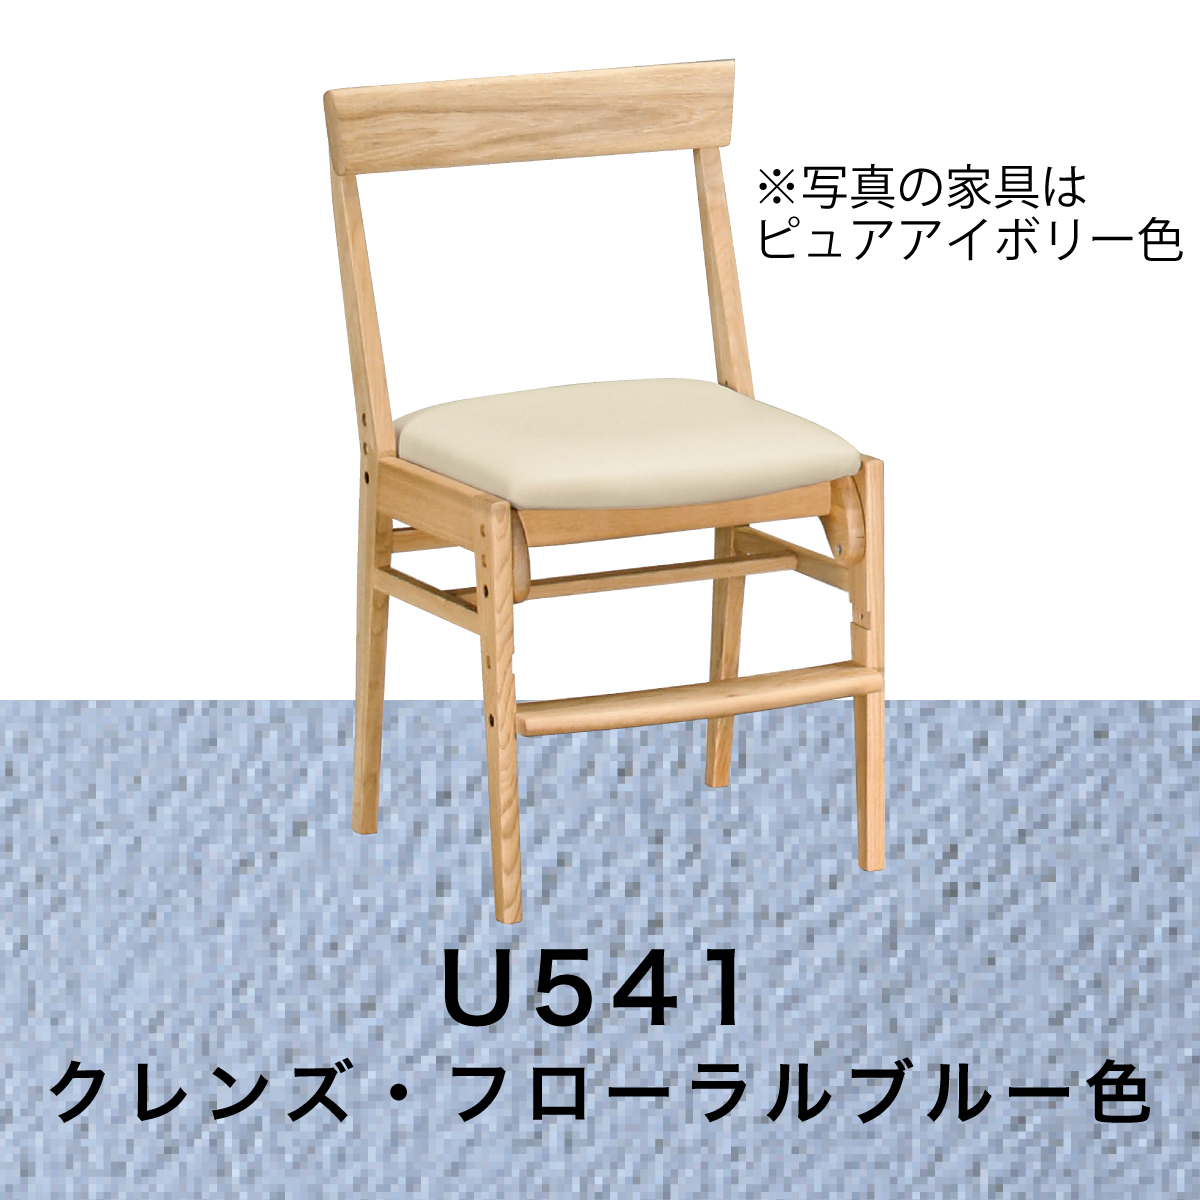 カリモク 学習椅子 おしゃれ XT0611 ピュアオーク色 デスクチェア 子供